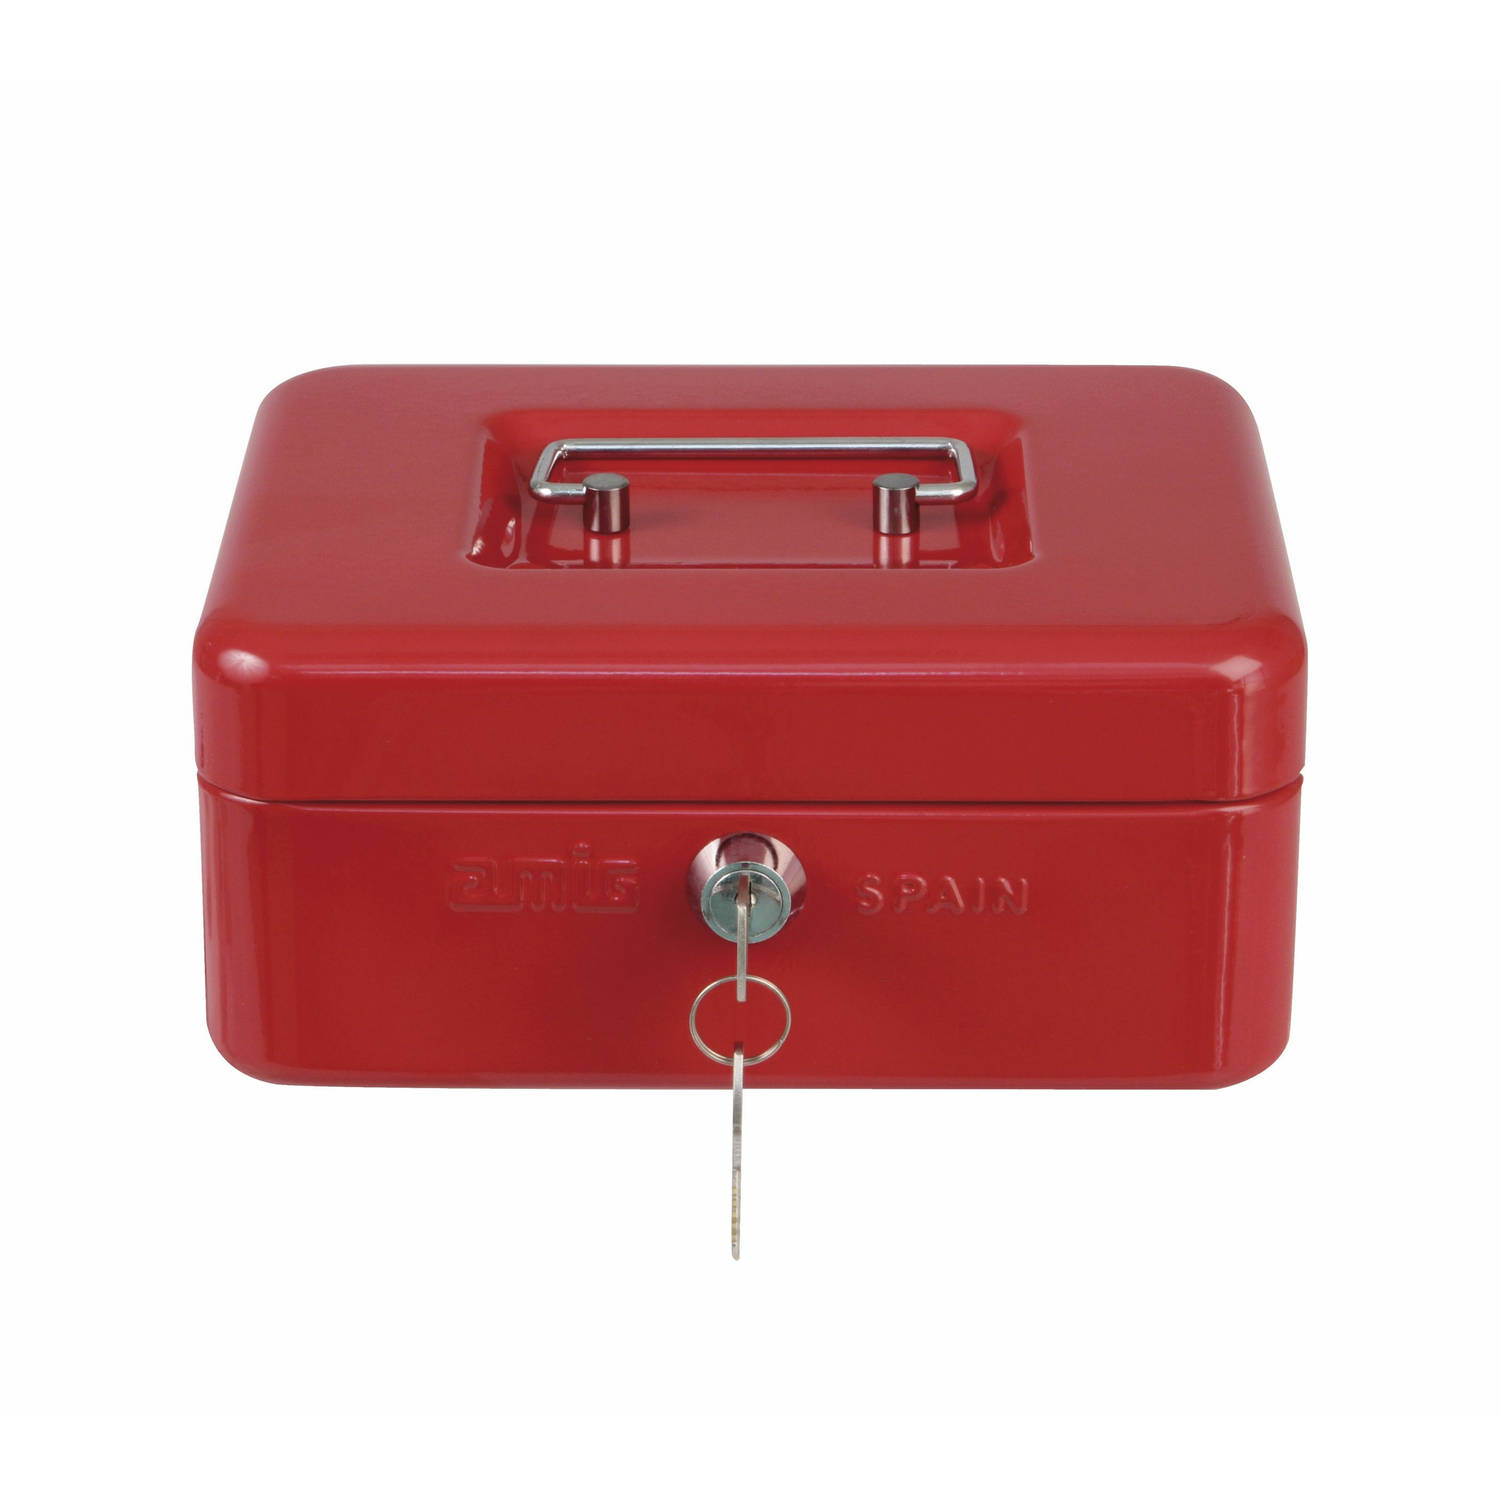 AMIG Geldkistje met 2 sleutels - rood - staal - muntbakje - 20 x 16 x 7 cm - inbraakbeveiliging